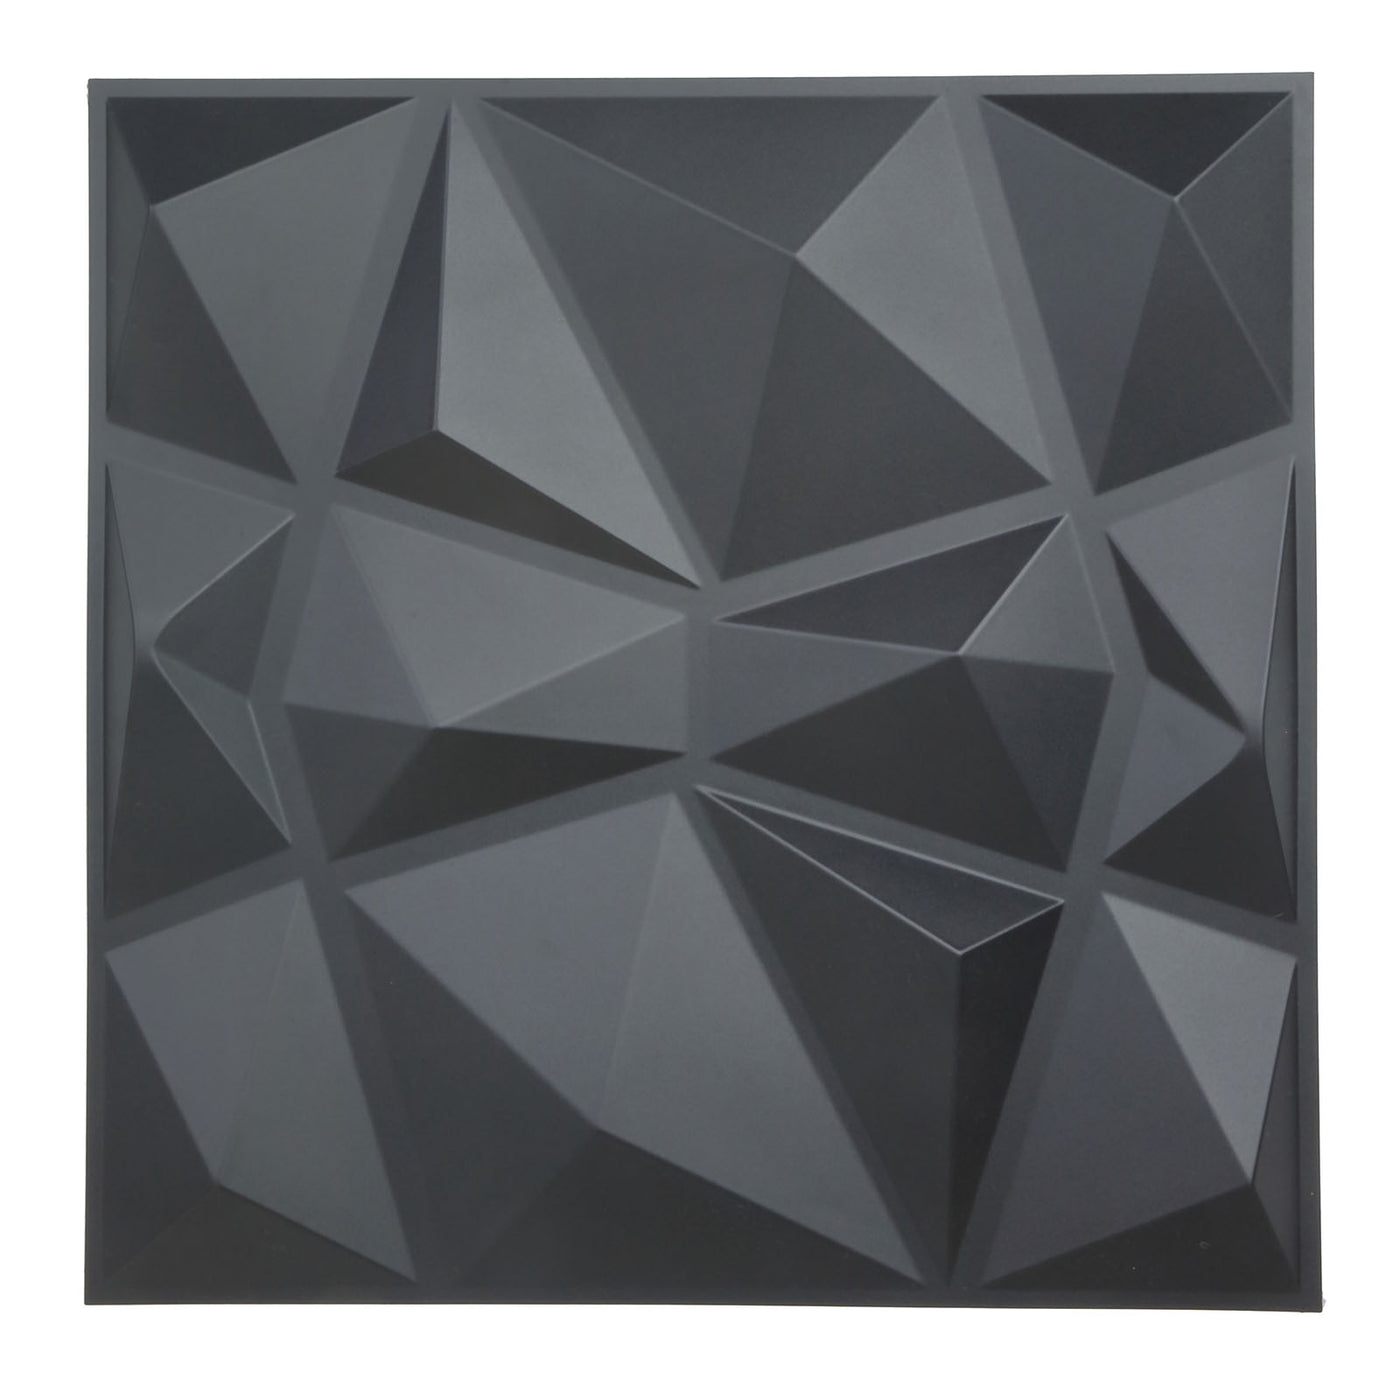 12-Pack Matte Black 3D Diamond Wall Panels | eFavormart.com